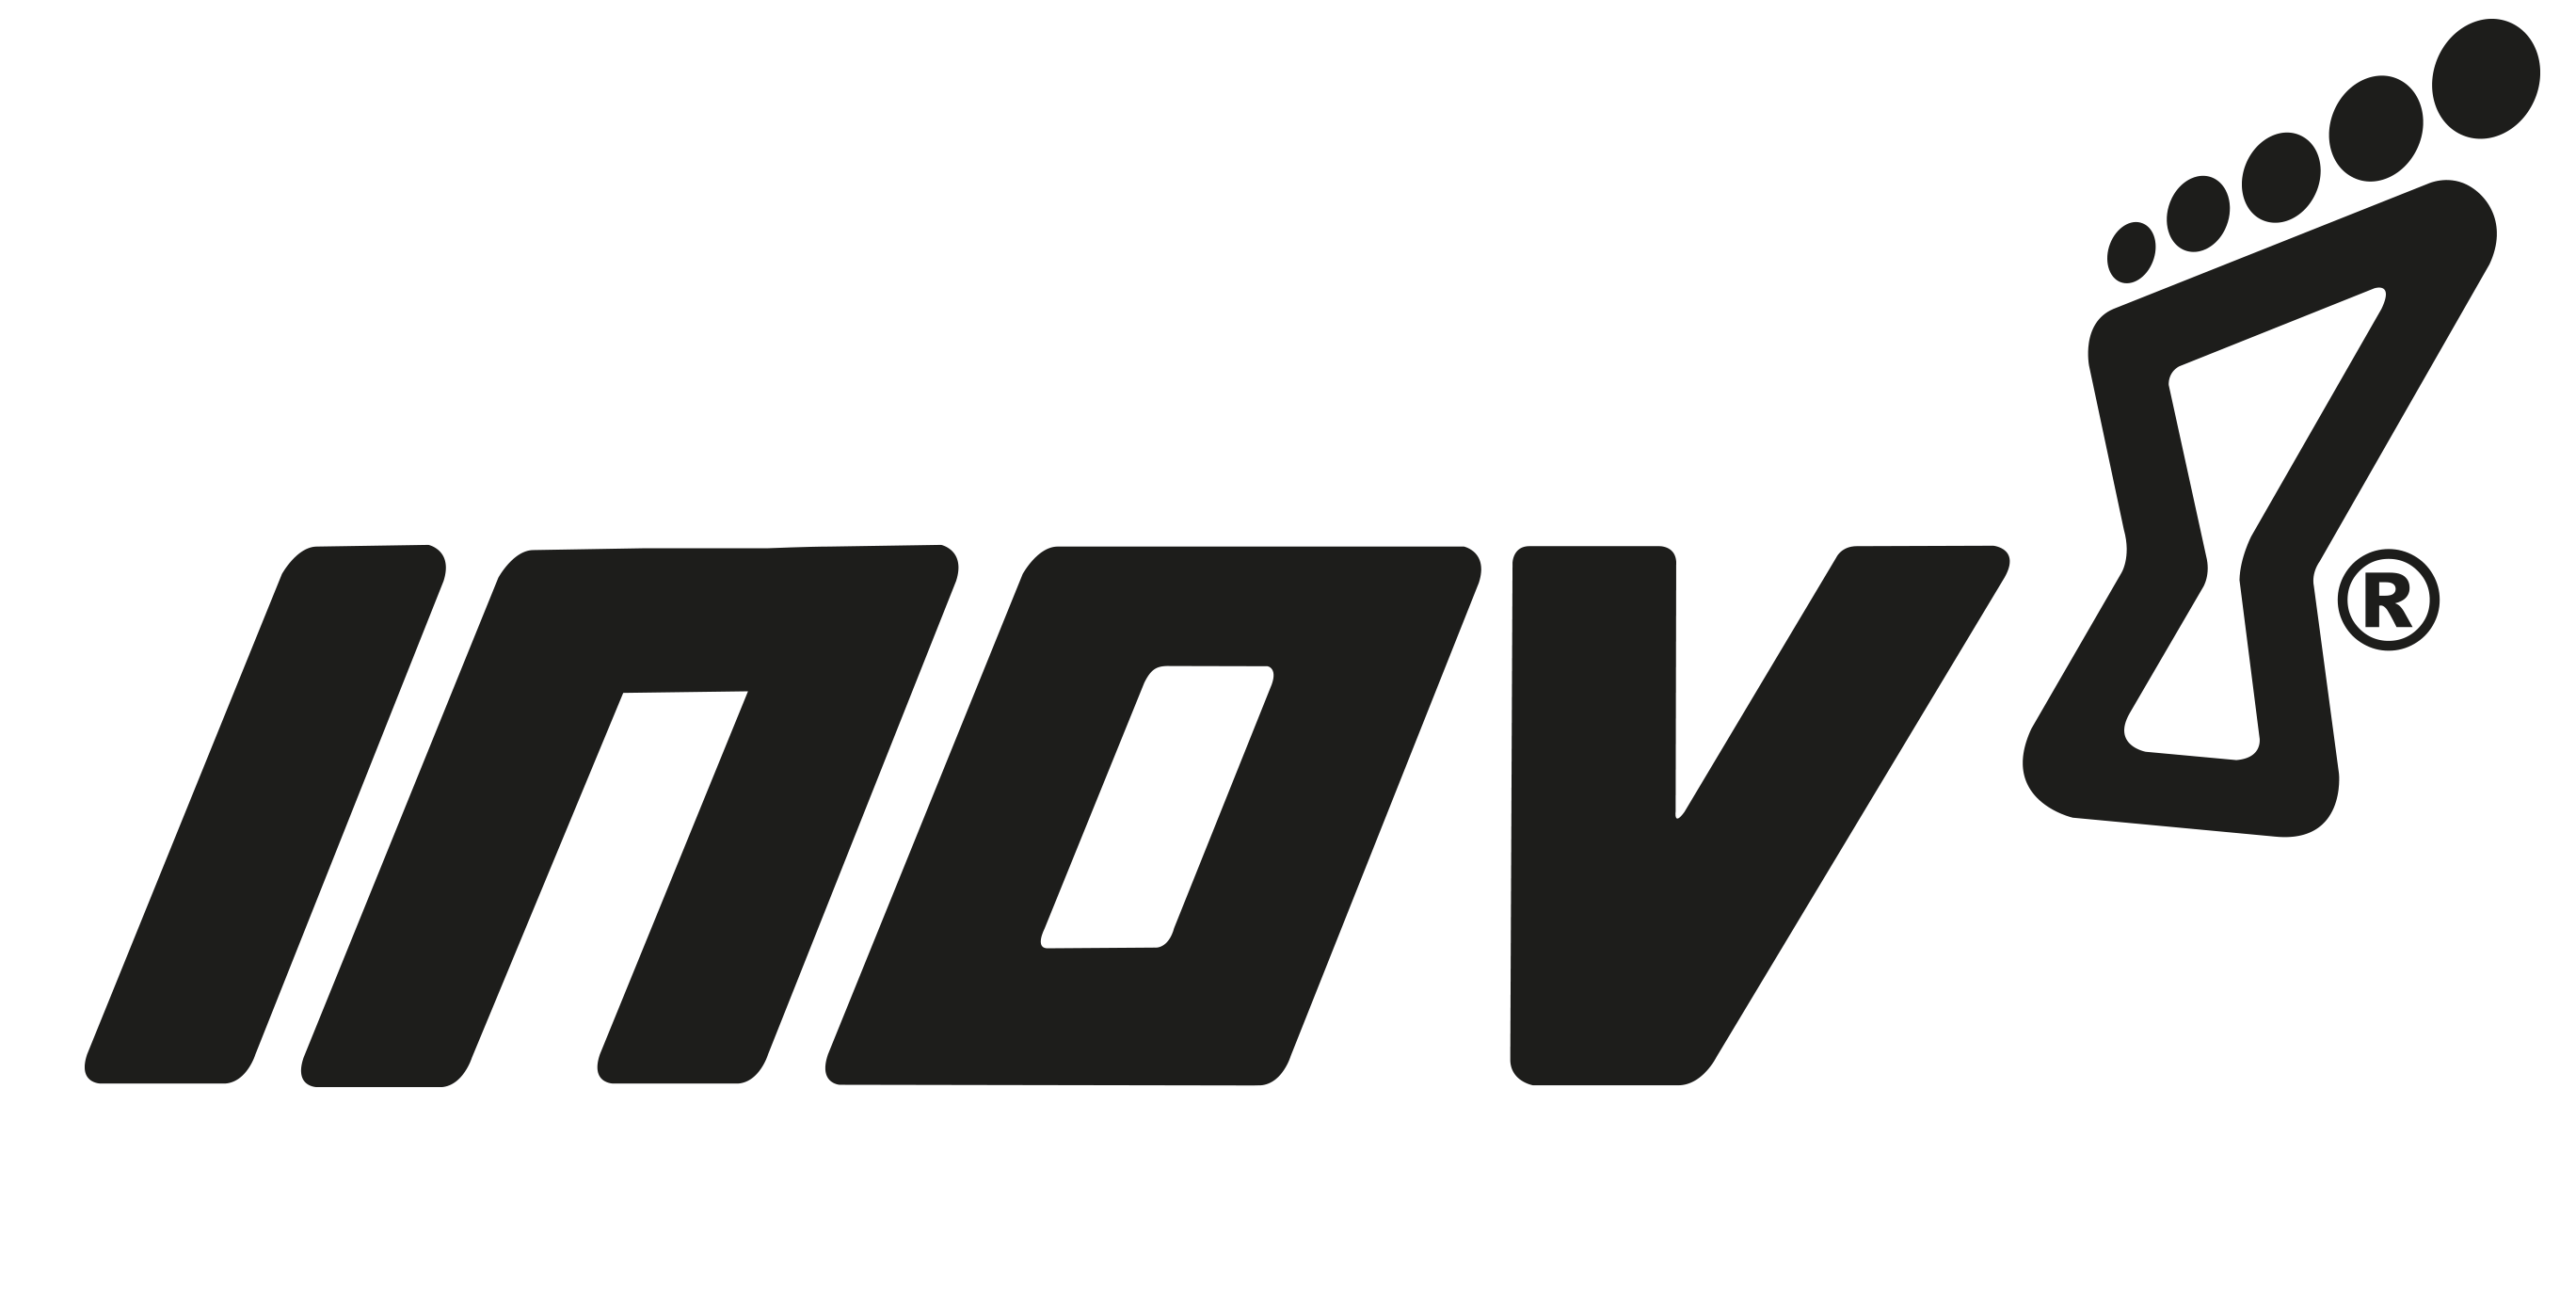 Inov8 logo